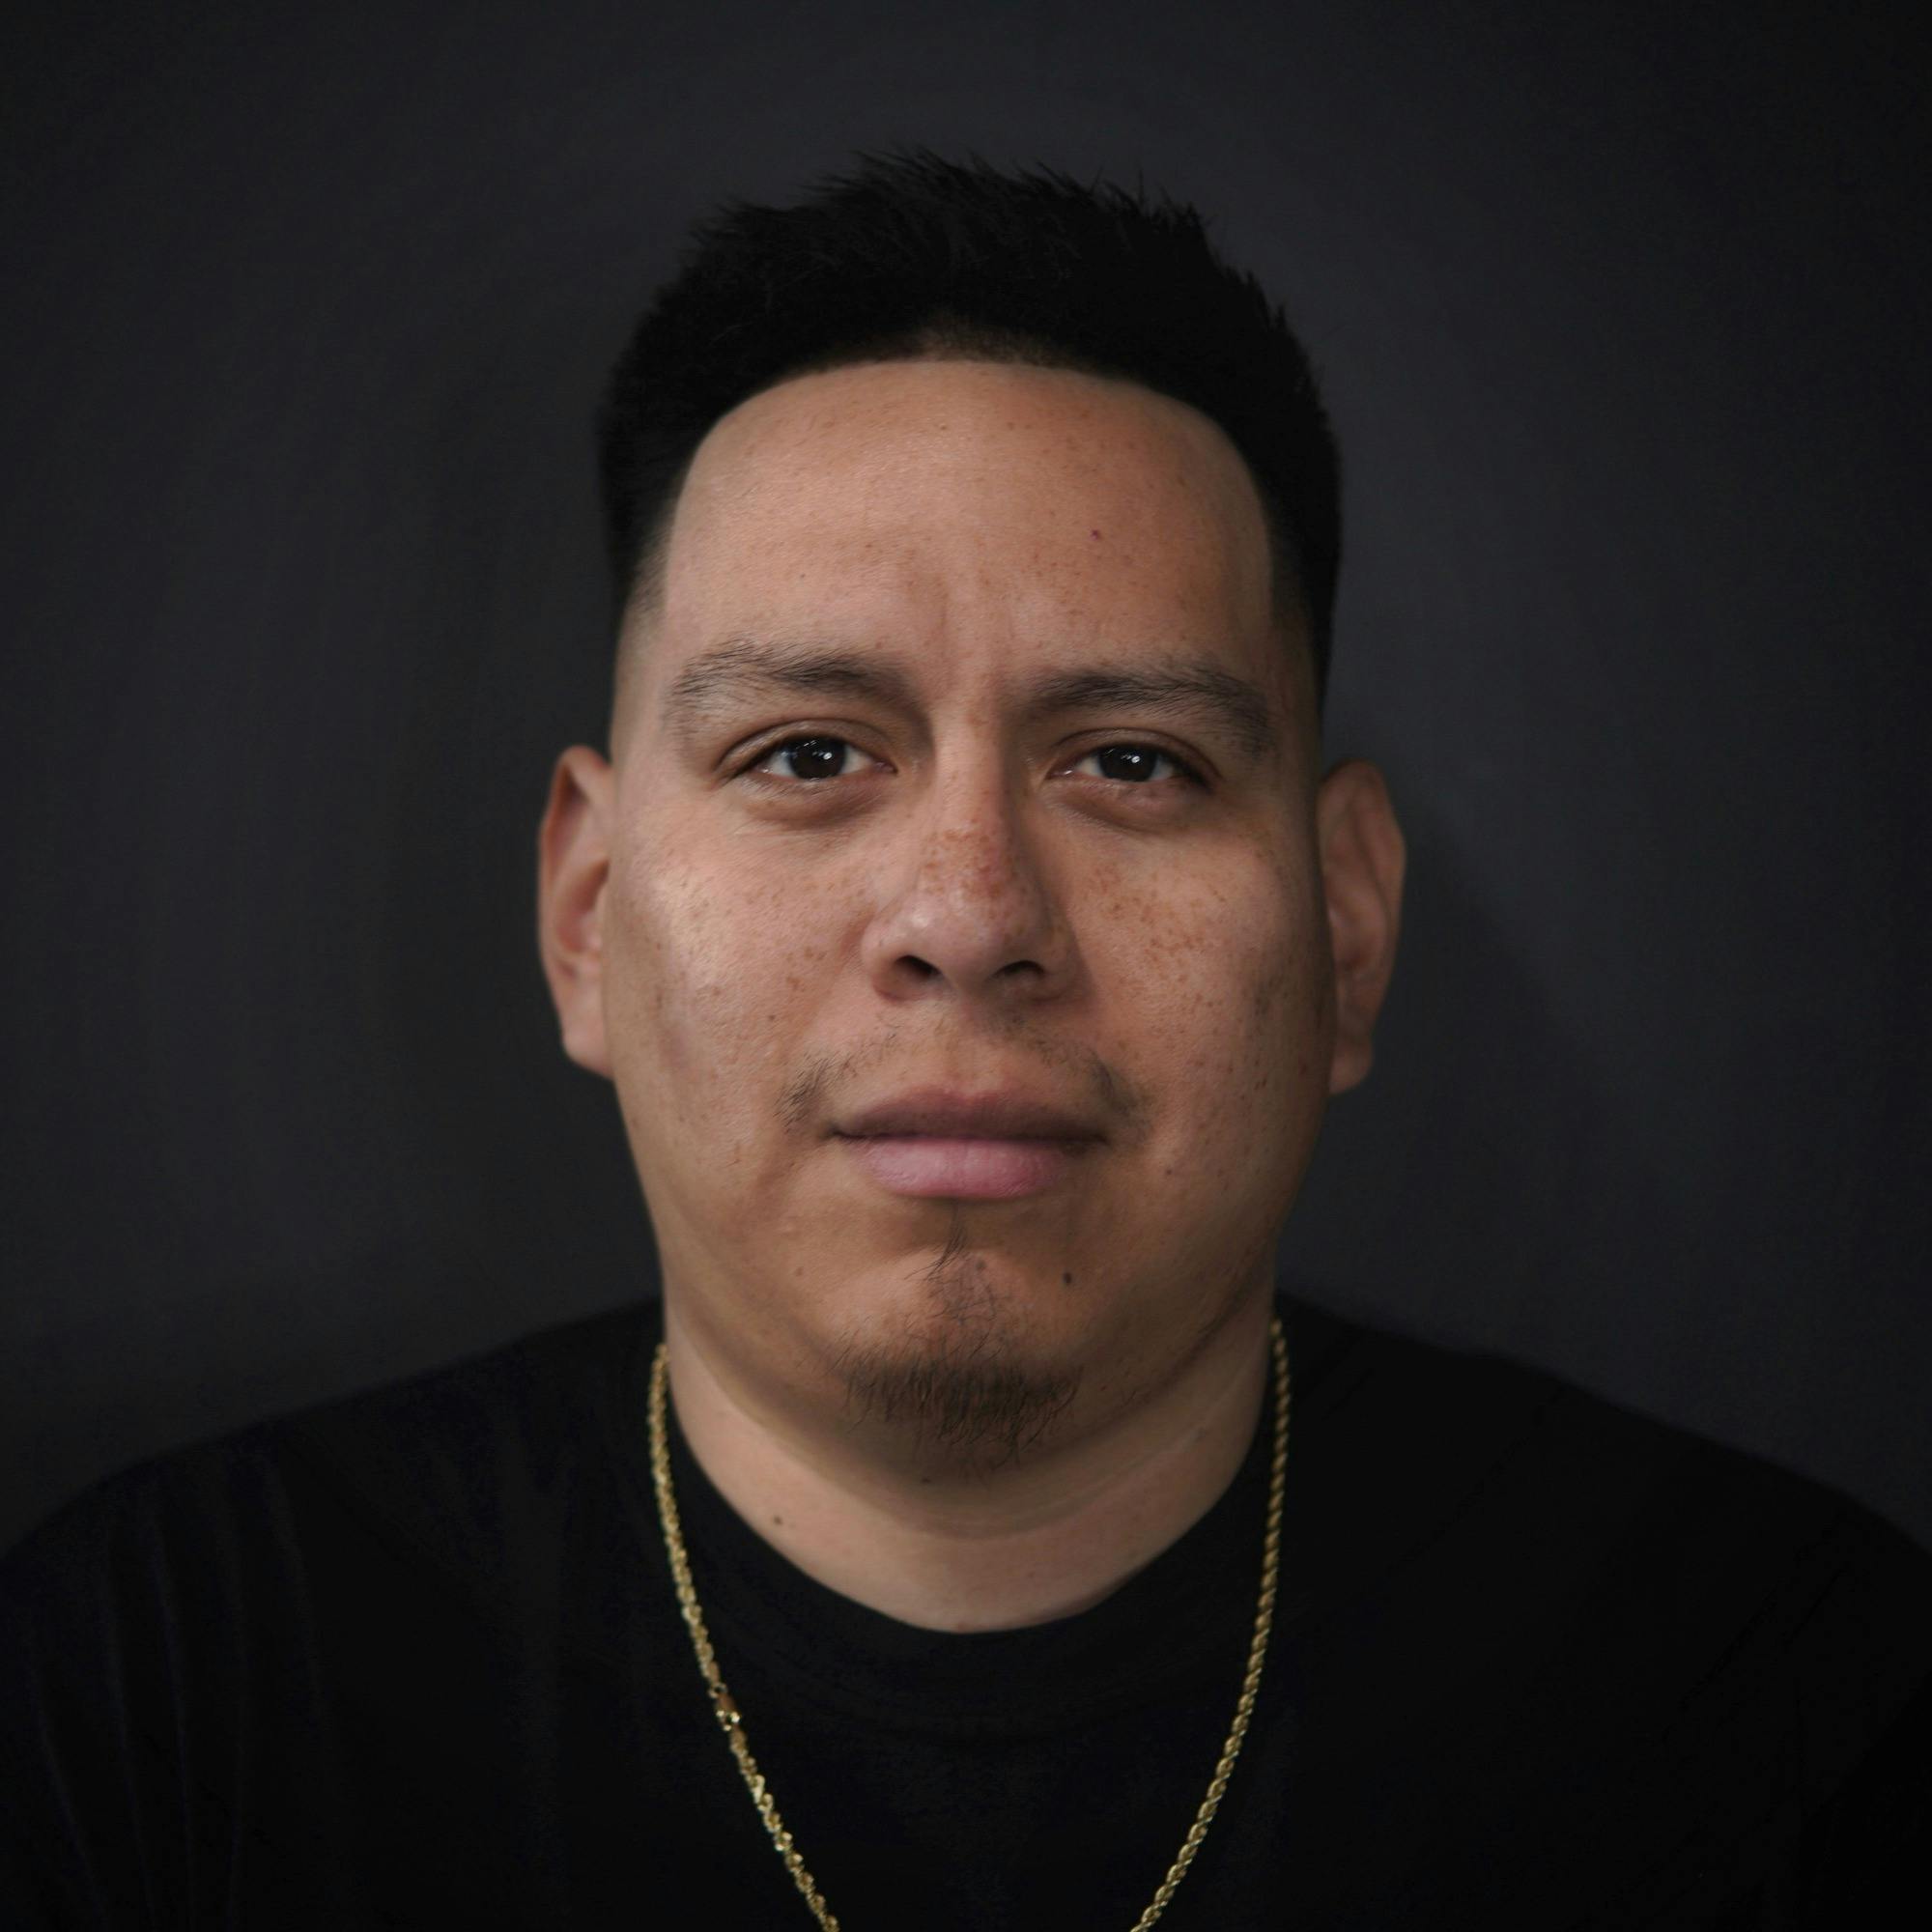 Republic barber image of Julio Juarez